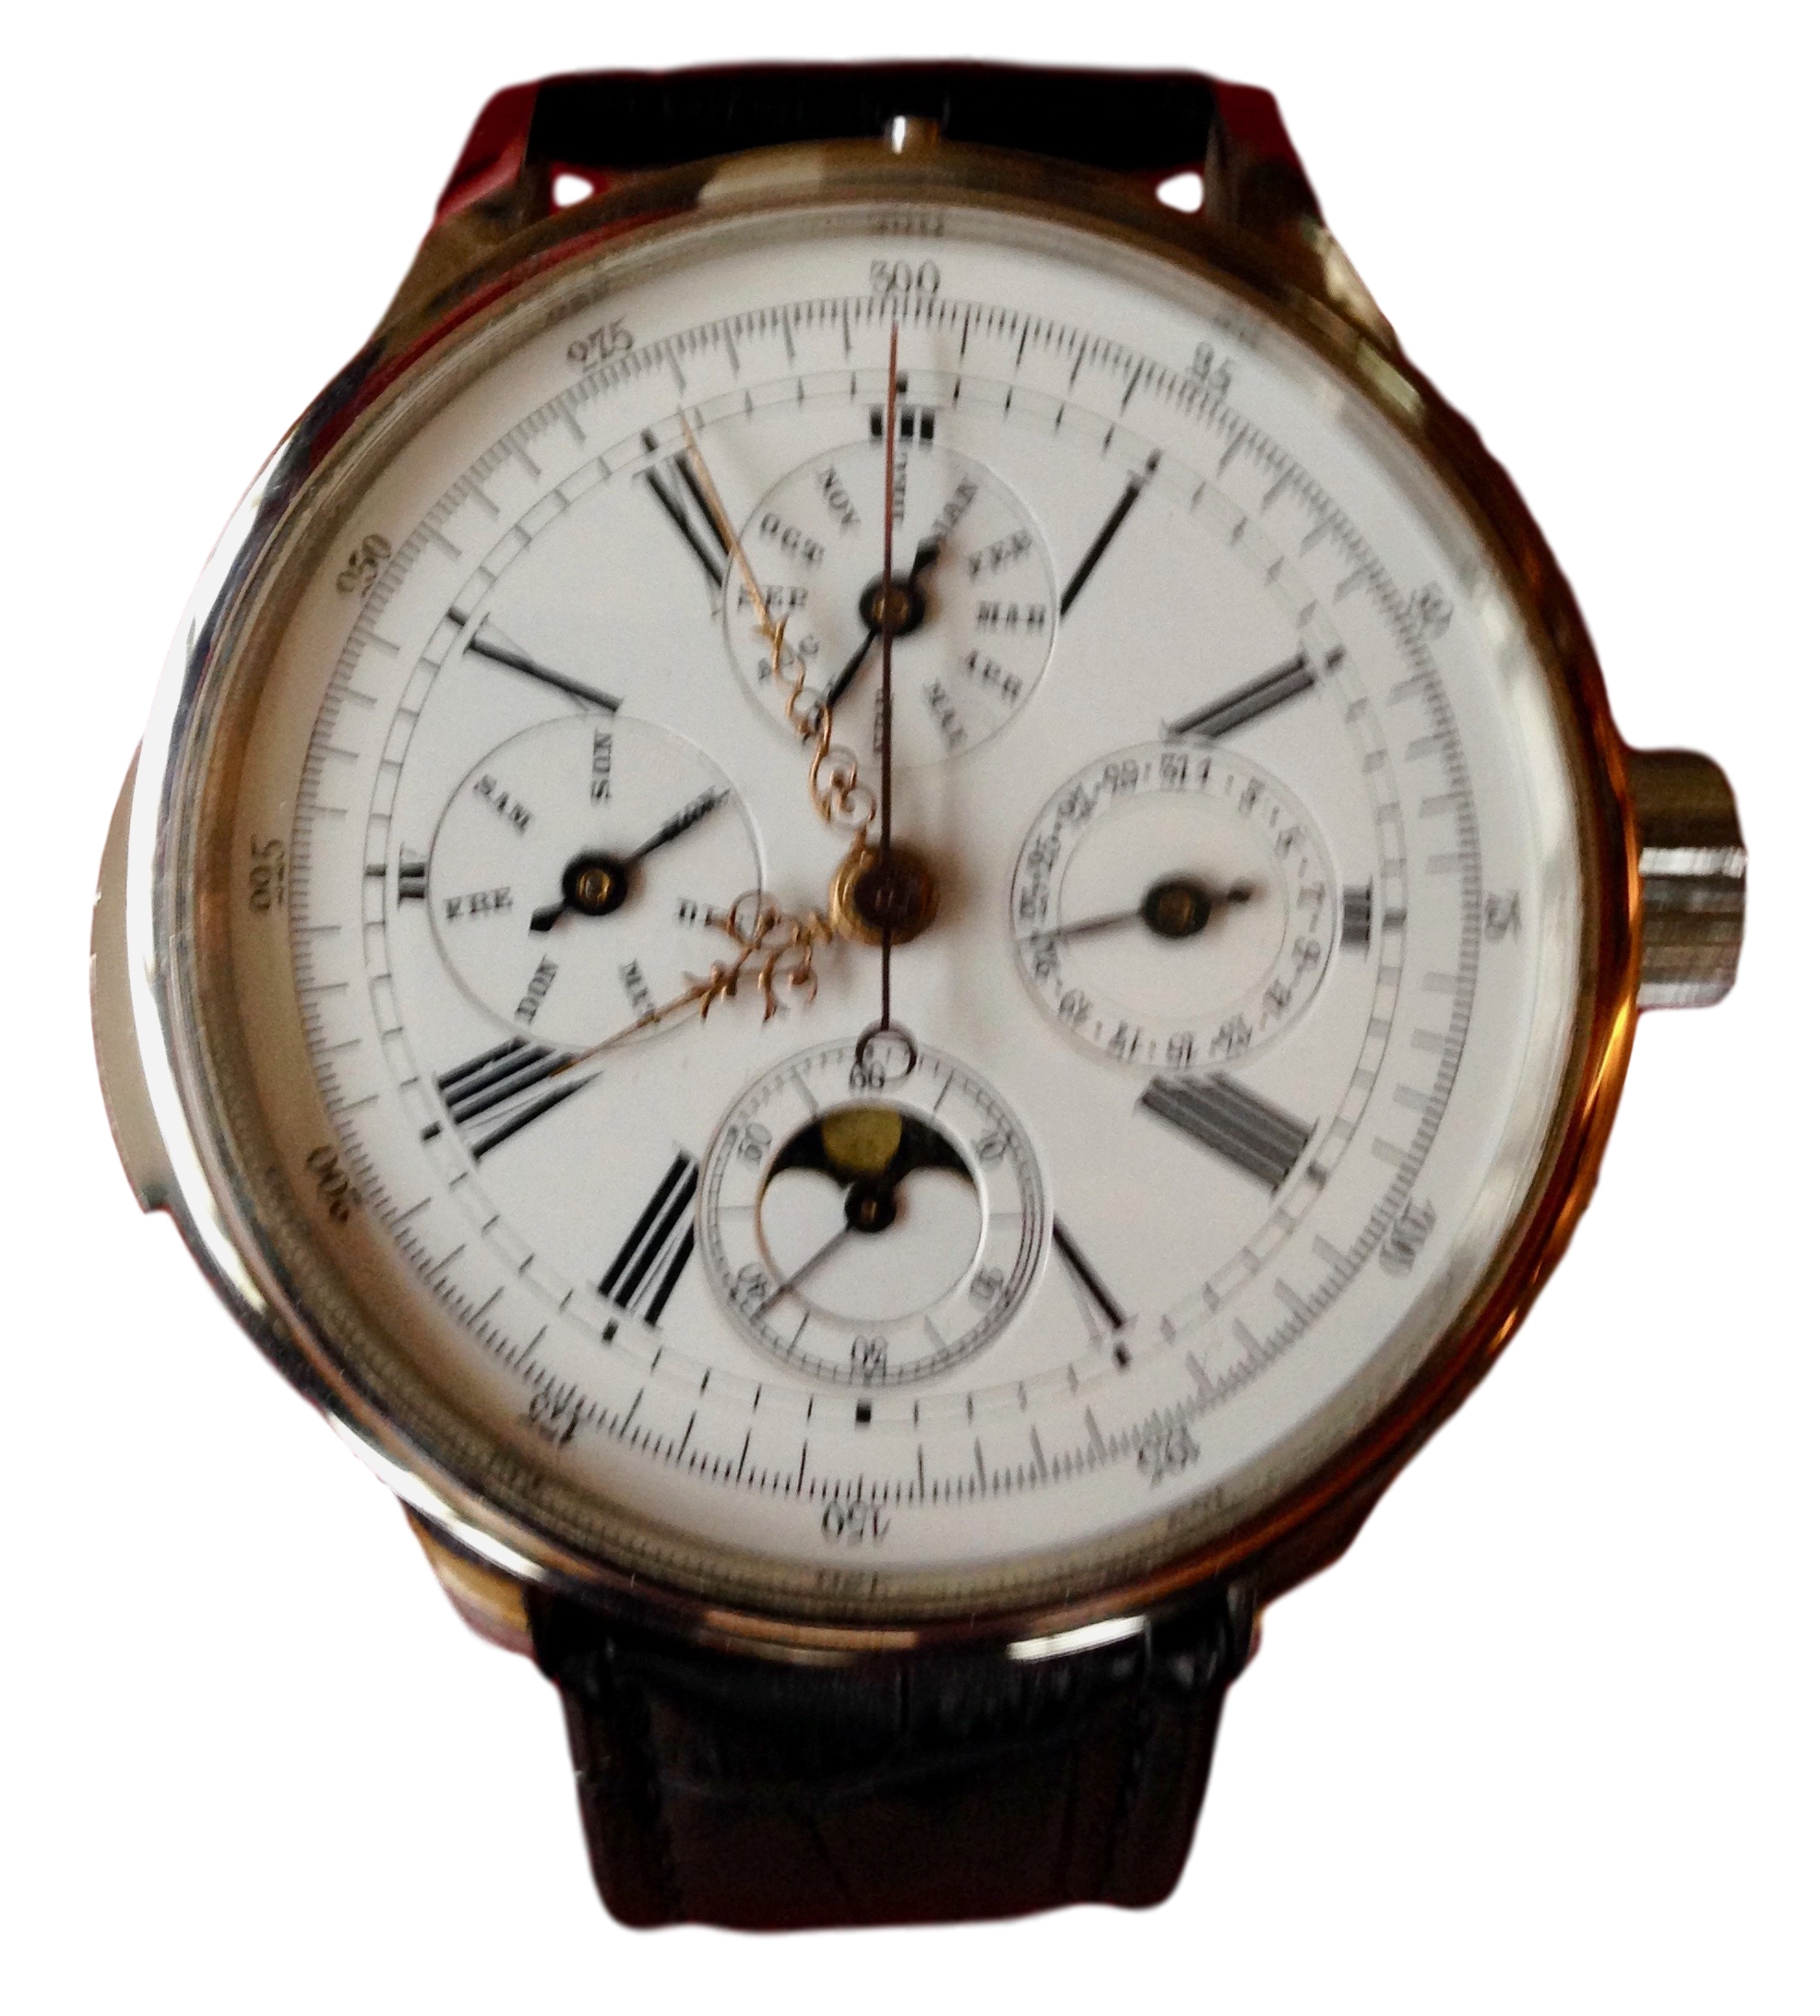 Grand complication kwartierrepetitie werk met een chronometer.